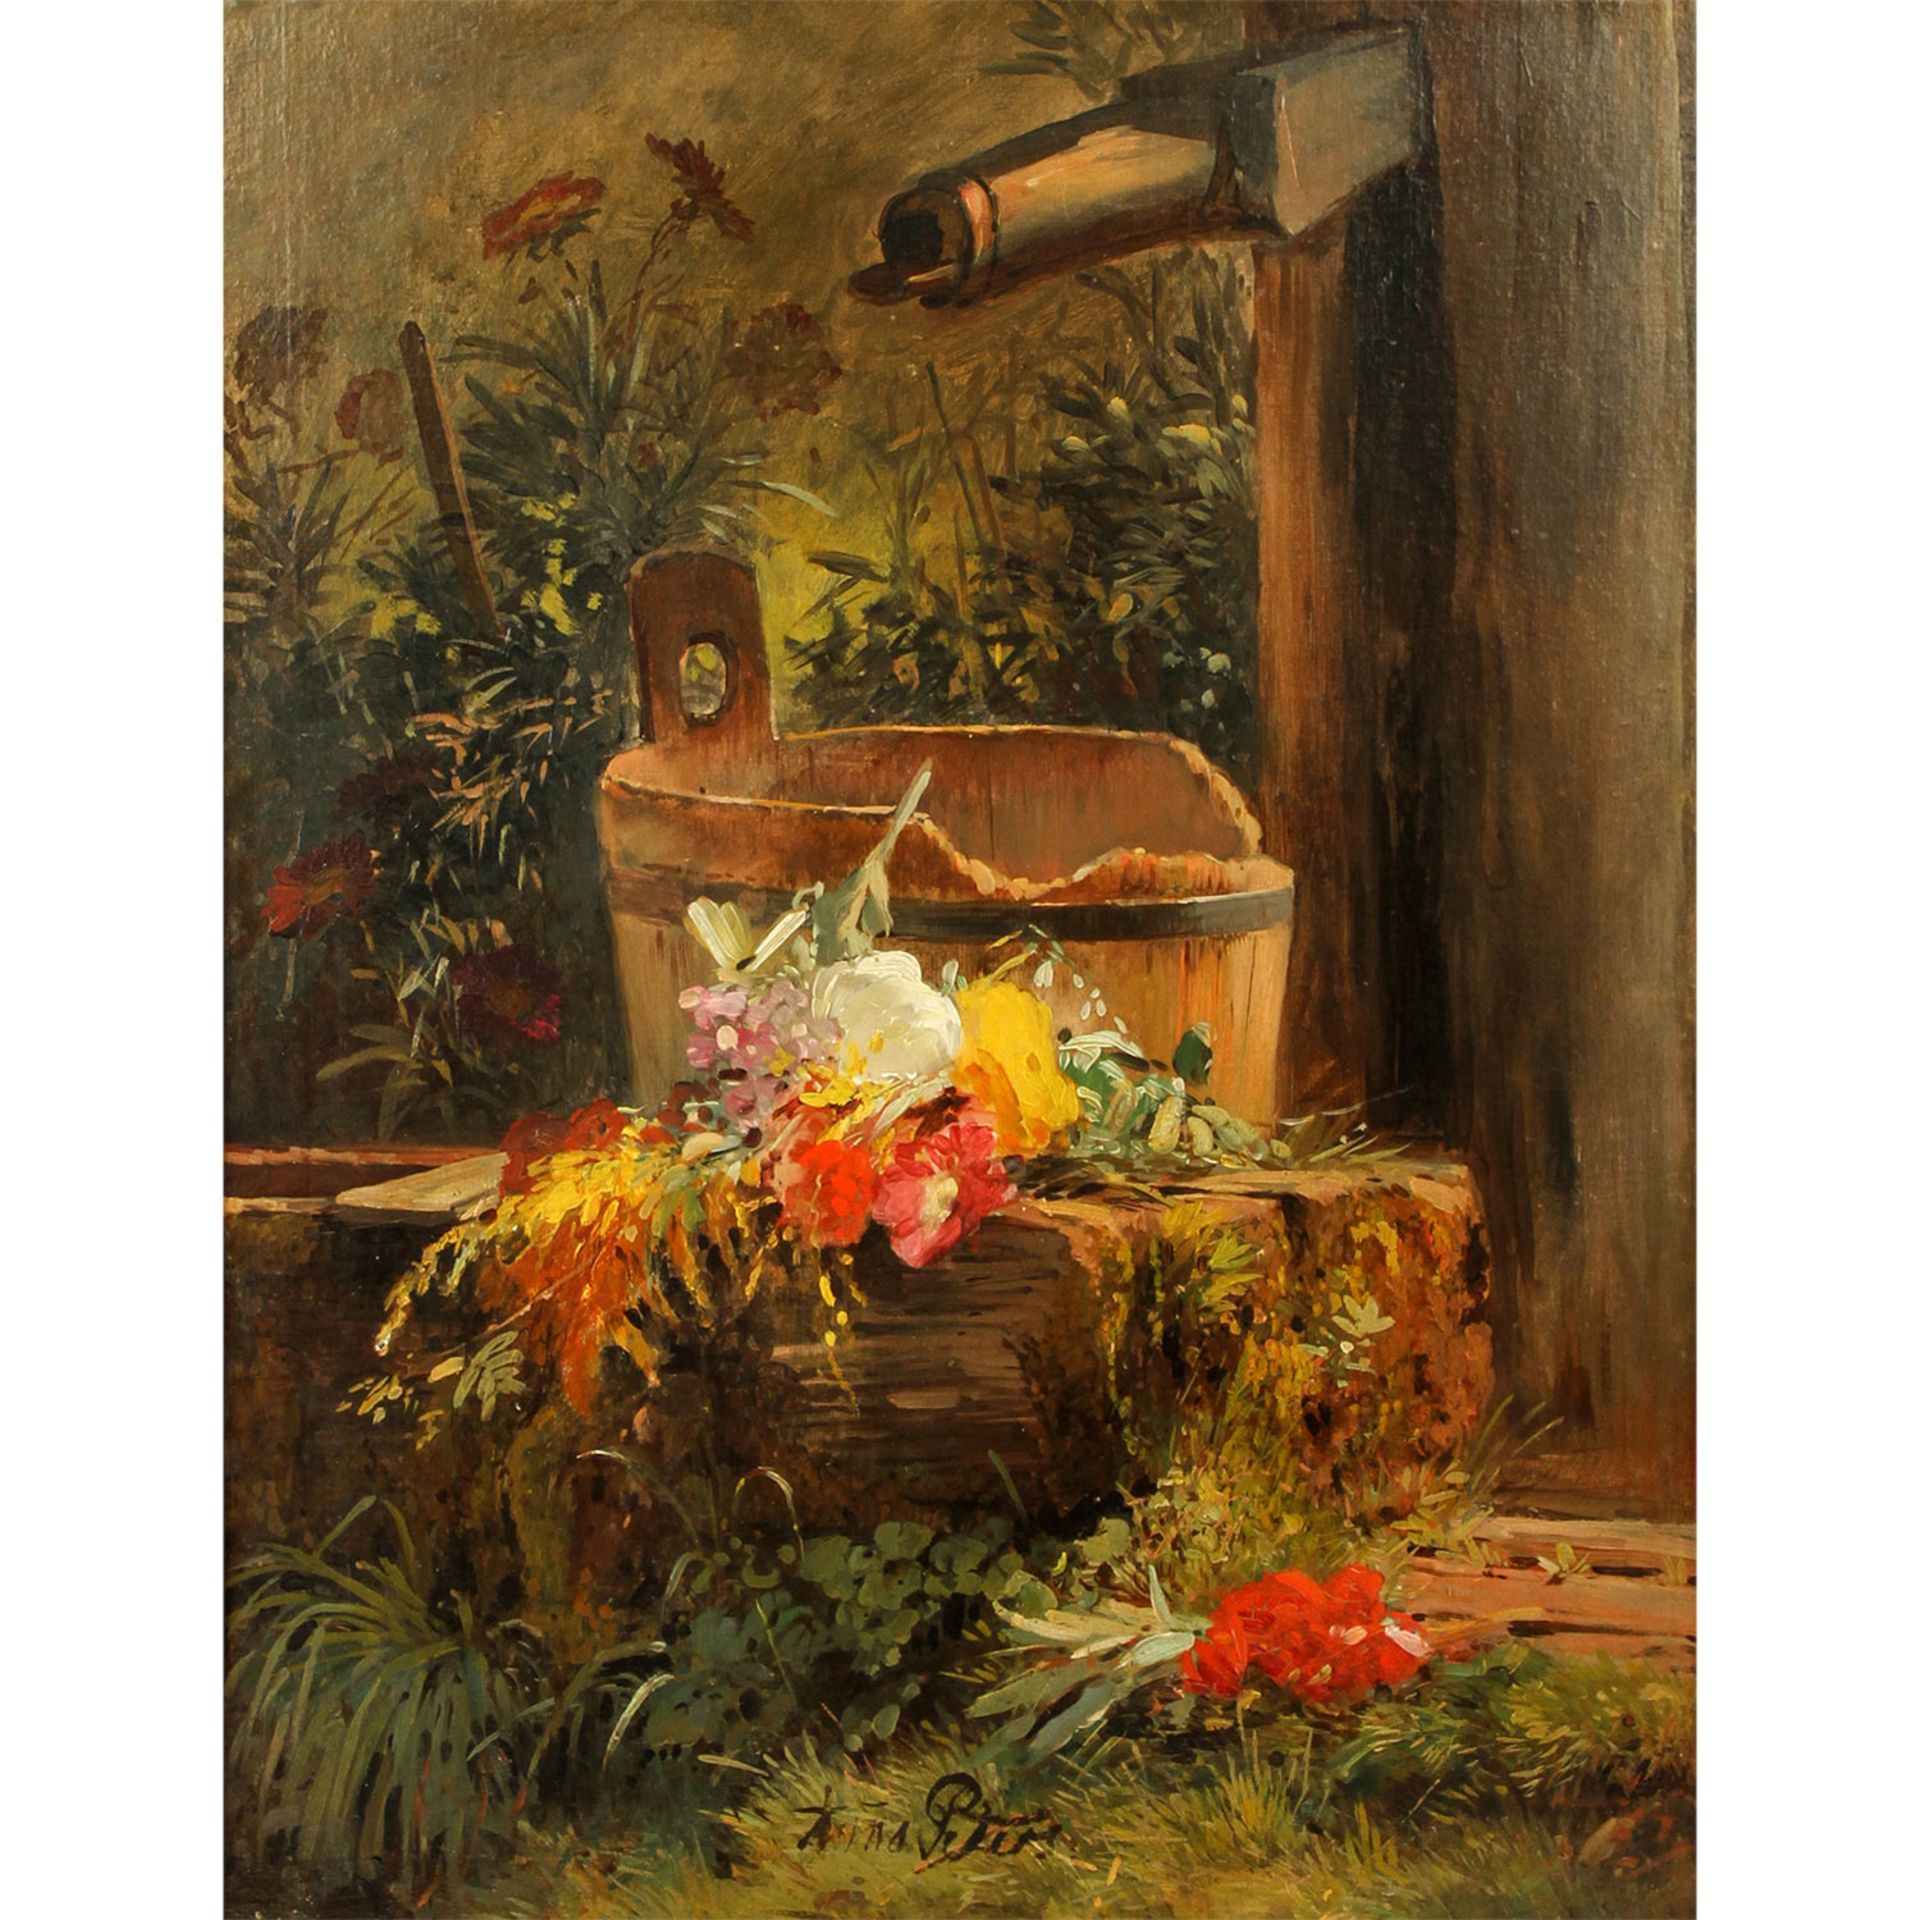 PETERS, ANNA (Mannheim 1843 - 1926 Stuttgart), "Blumen am Gartenbrunnen",Sommerblumen auf einer